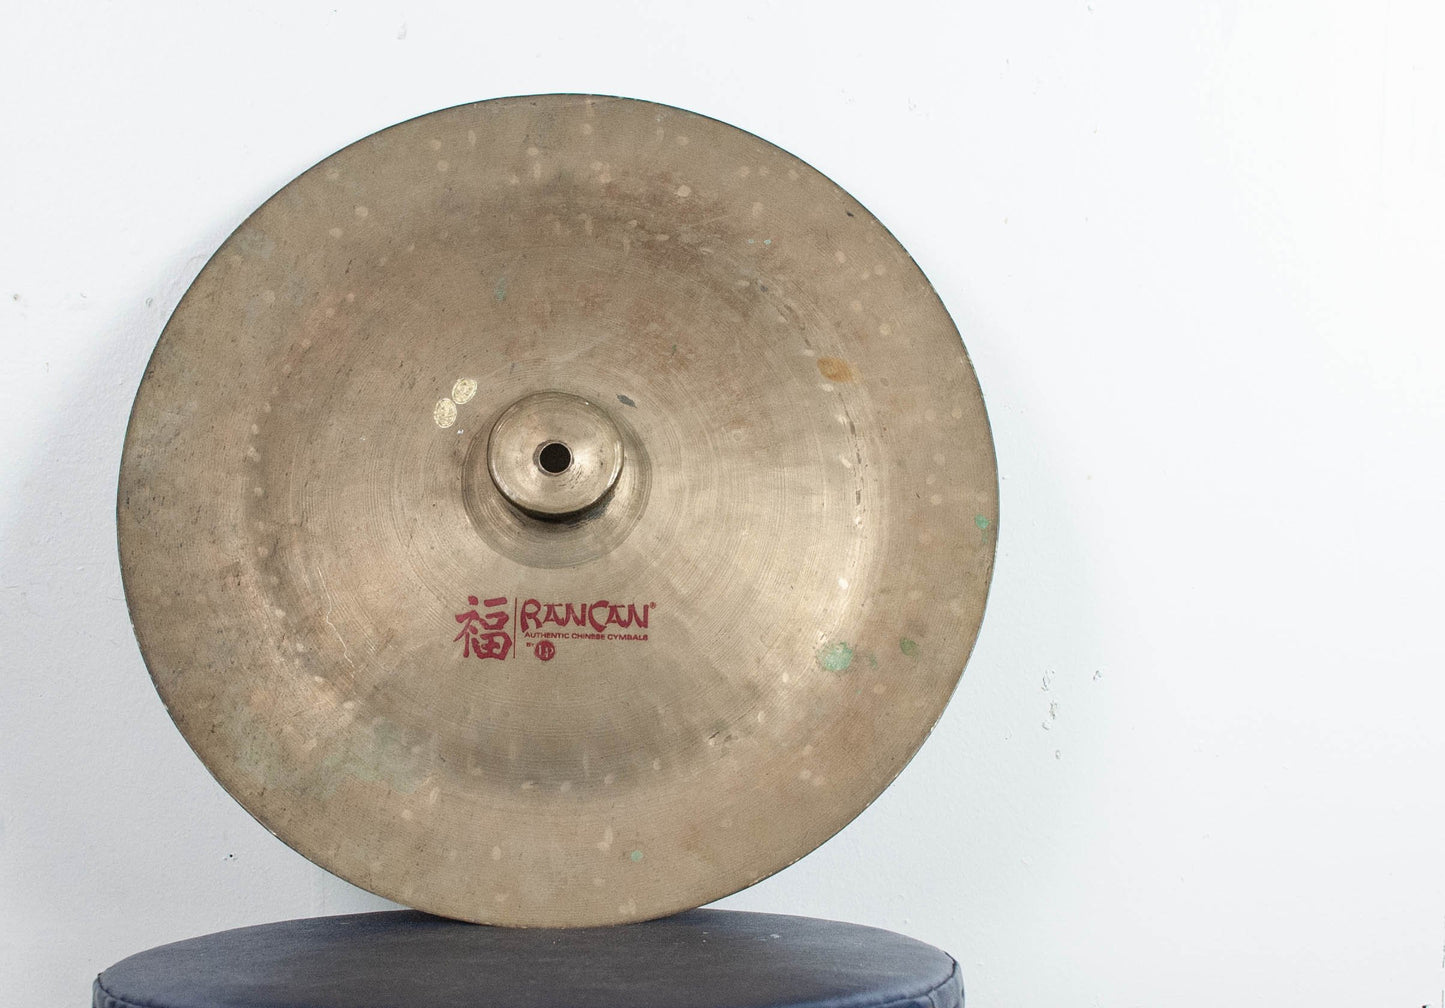 LP Rancan 14" China Cymbal 900g